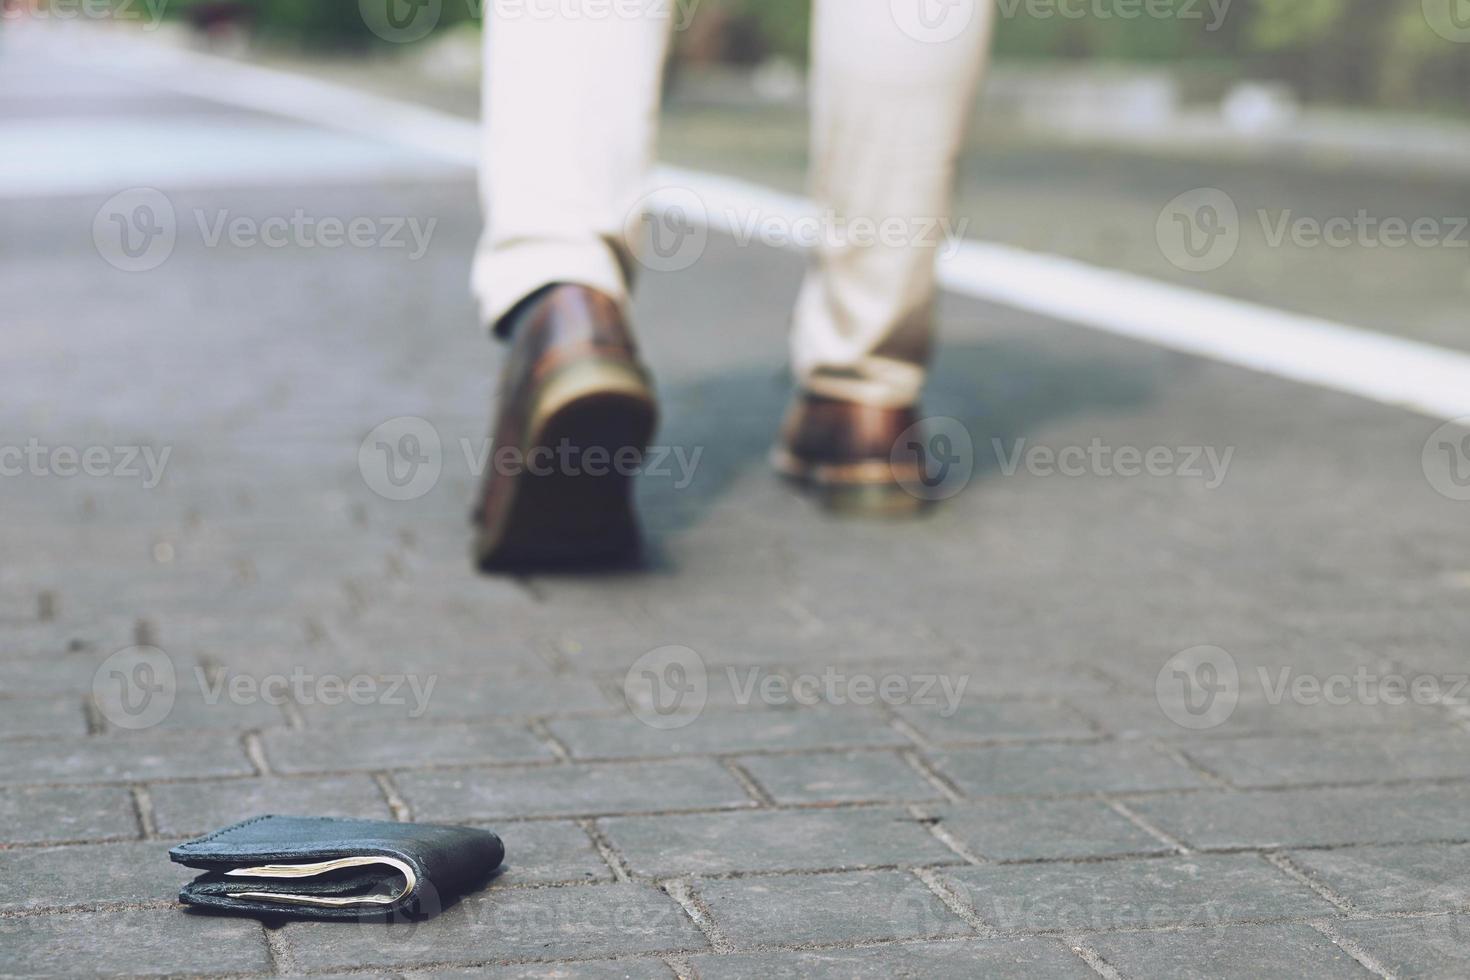 l'uomo d'affari aveva perso il portafoglio di pelle con i soldi per strada. primo piano del portafoglio sdraiato sul marciapiede durante il viaggio per lavoro. lasciare spazio per scrivere messaggi. foto